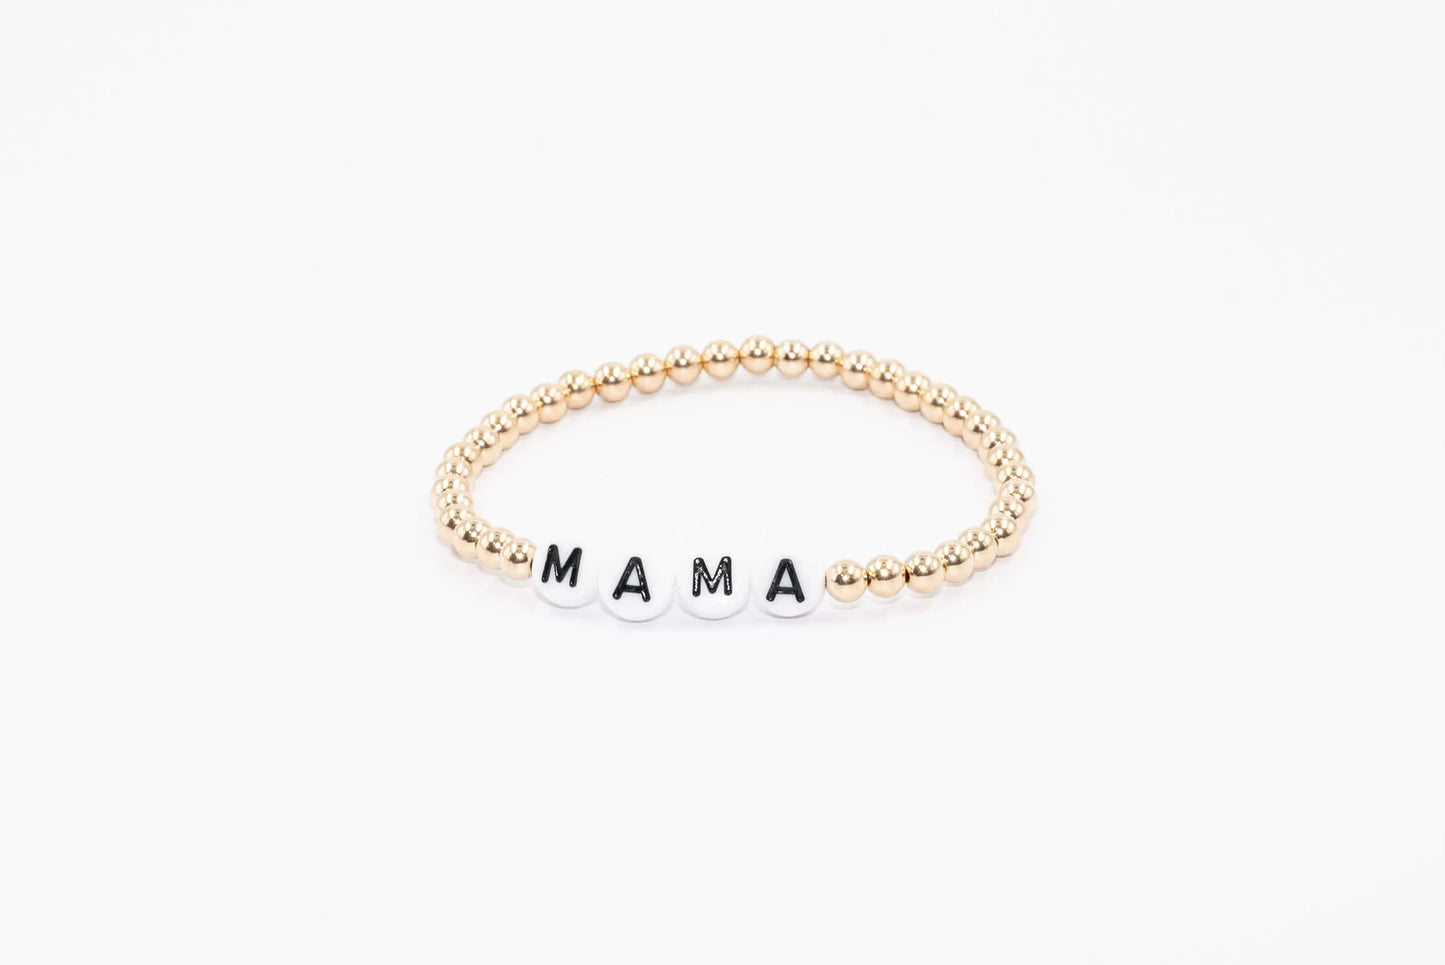 *4mm 14K Gold Filled Mama Bracelet*